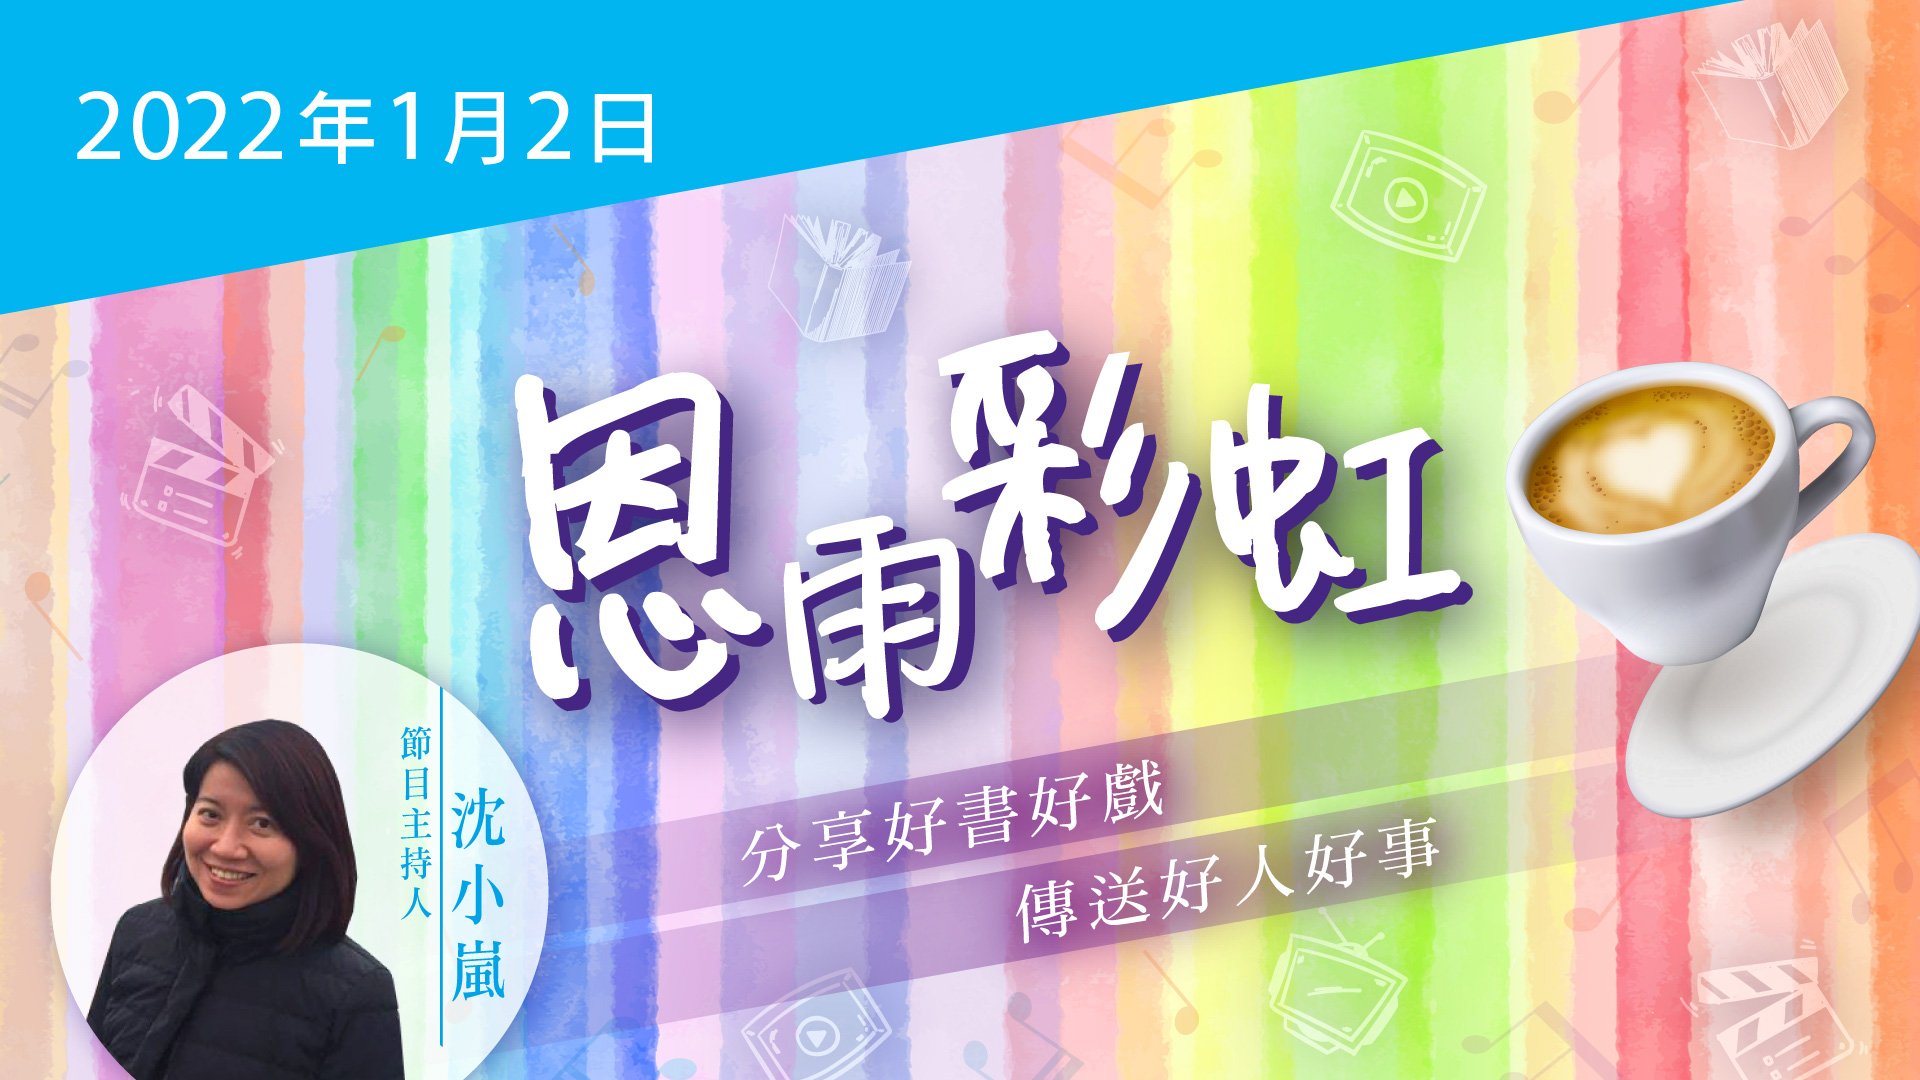 電台 恩雨彩虹 國語 (2022JAN02)